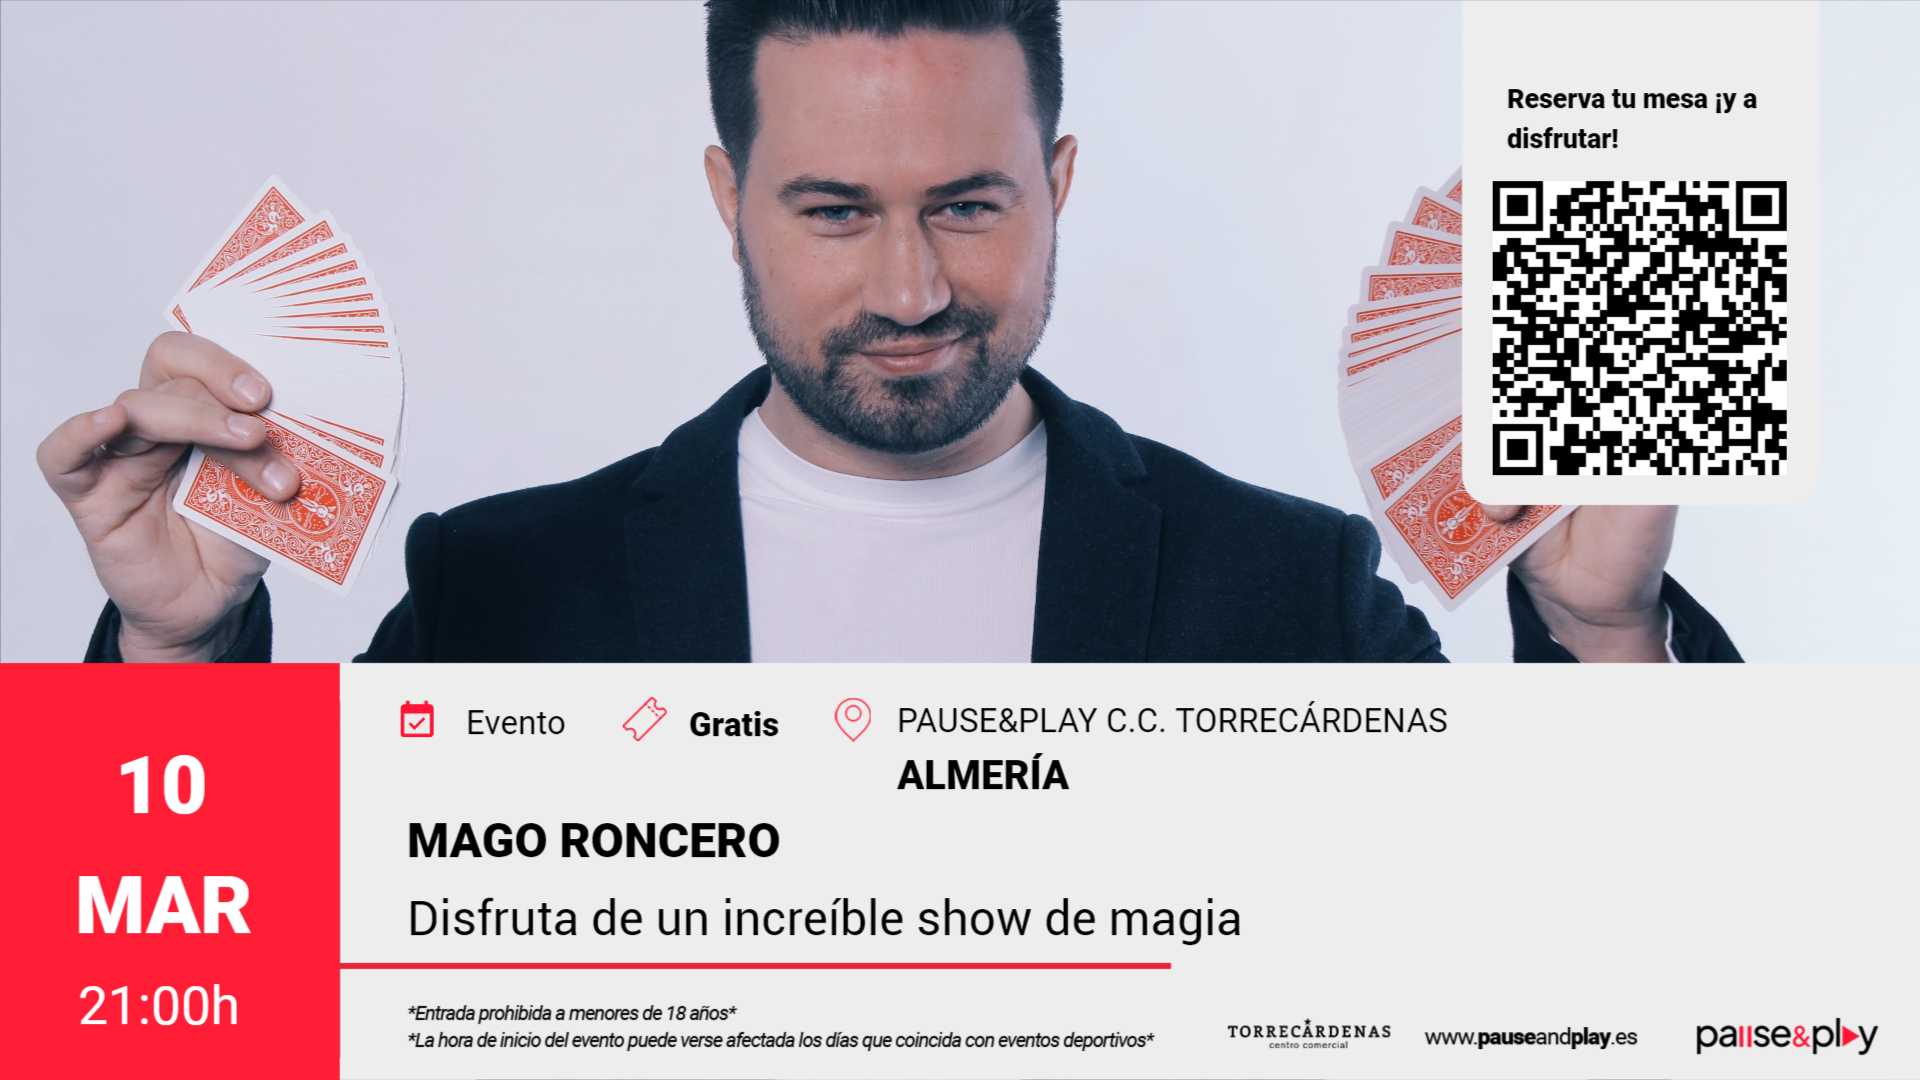 Show de Magia Mago Roncero Pause&Play C.C. Torrecárdenas (Almeria)